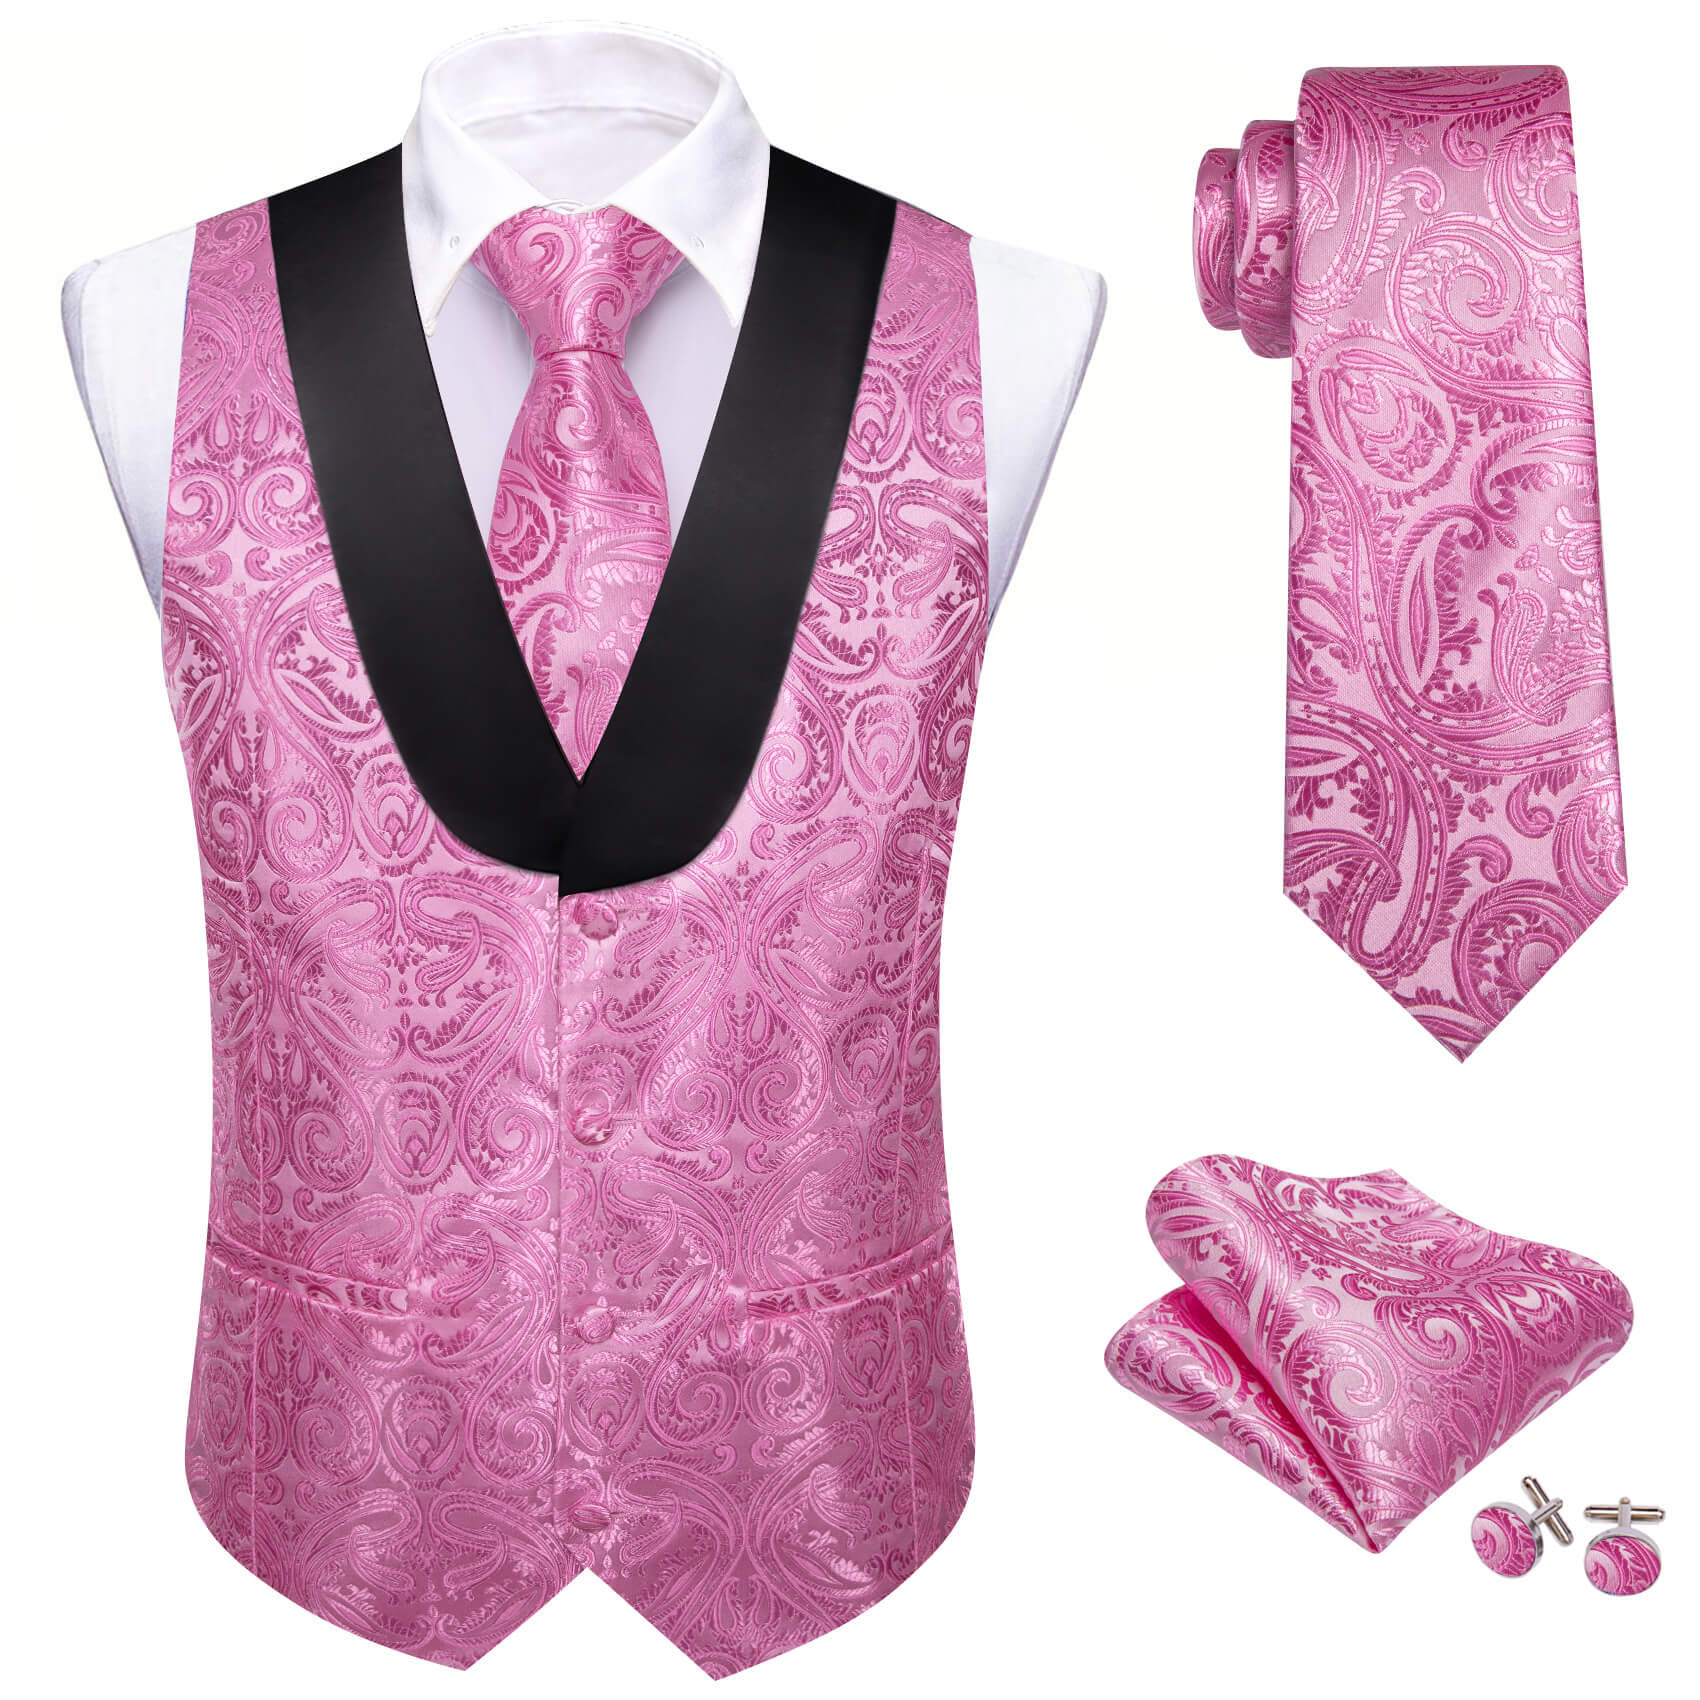 Barry.wang Shawl Collar Vest Hot Pink Paisley Men's Vest Necktie Hanky Cufflinks Set